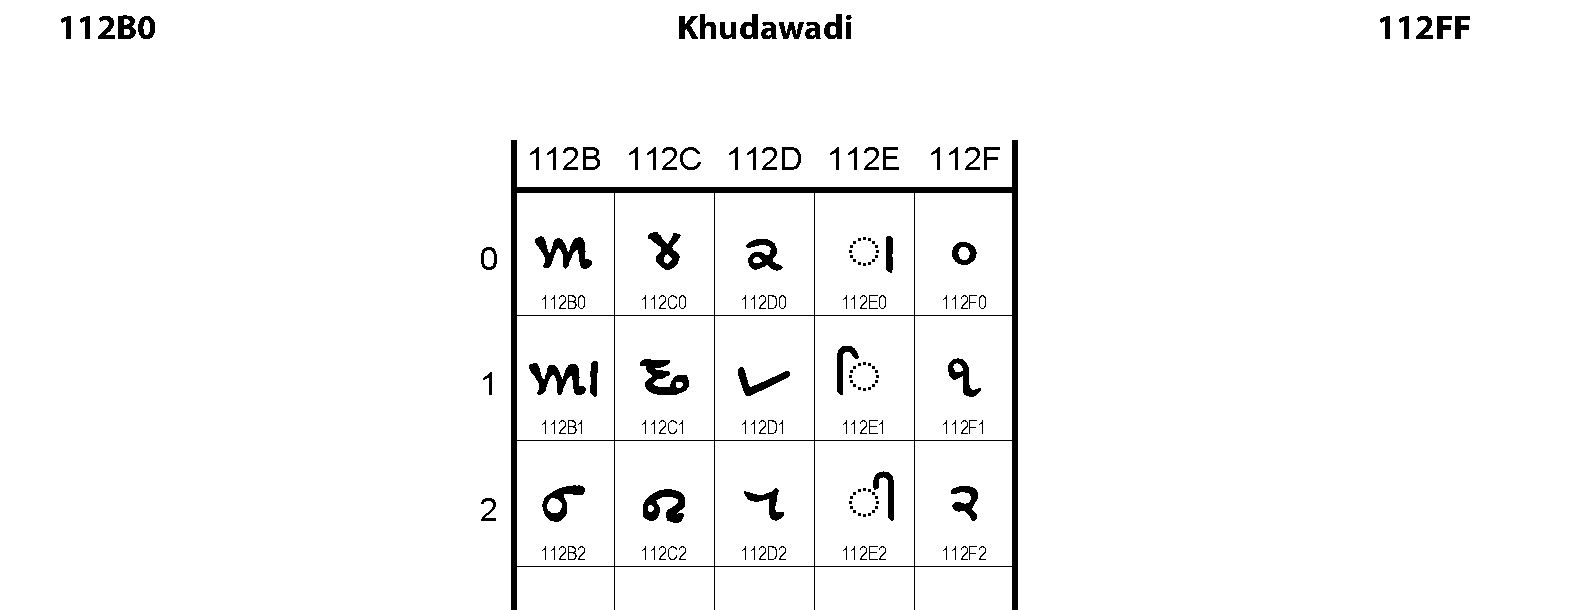 Unicode - Khudawadi